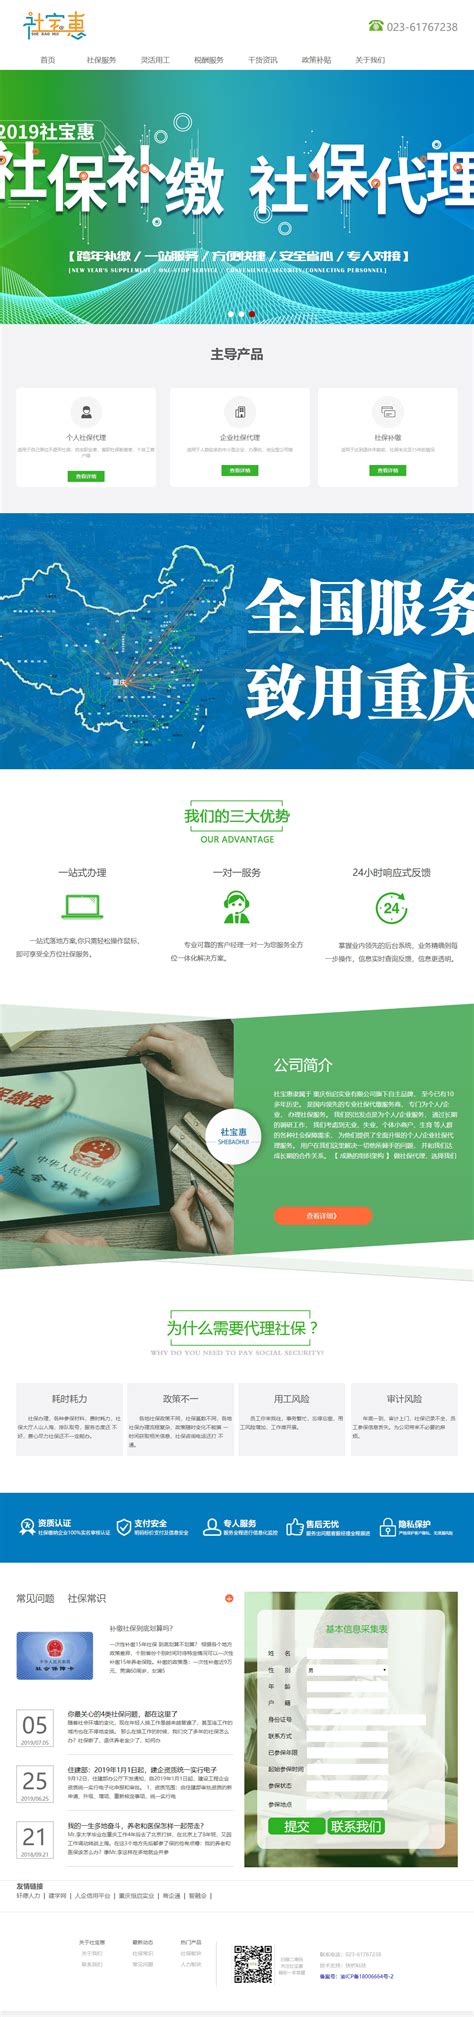 重庆网络营销技术推广信息中心